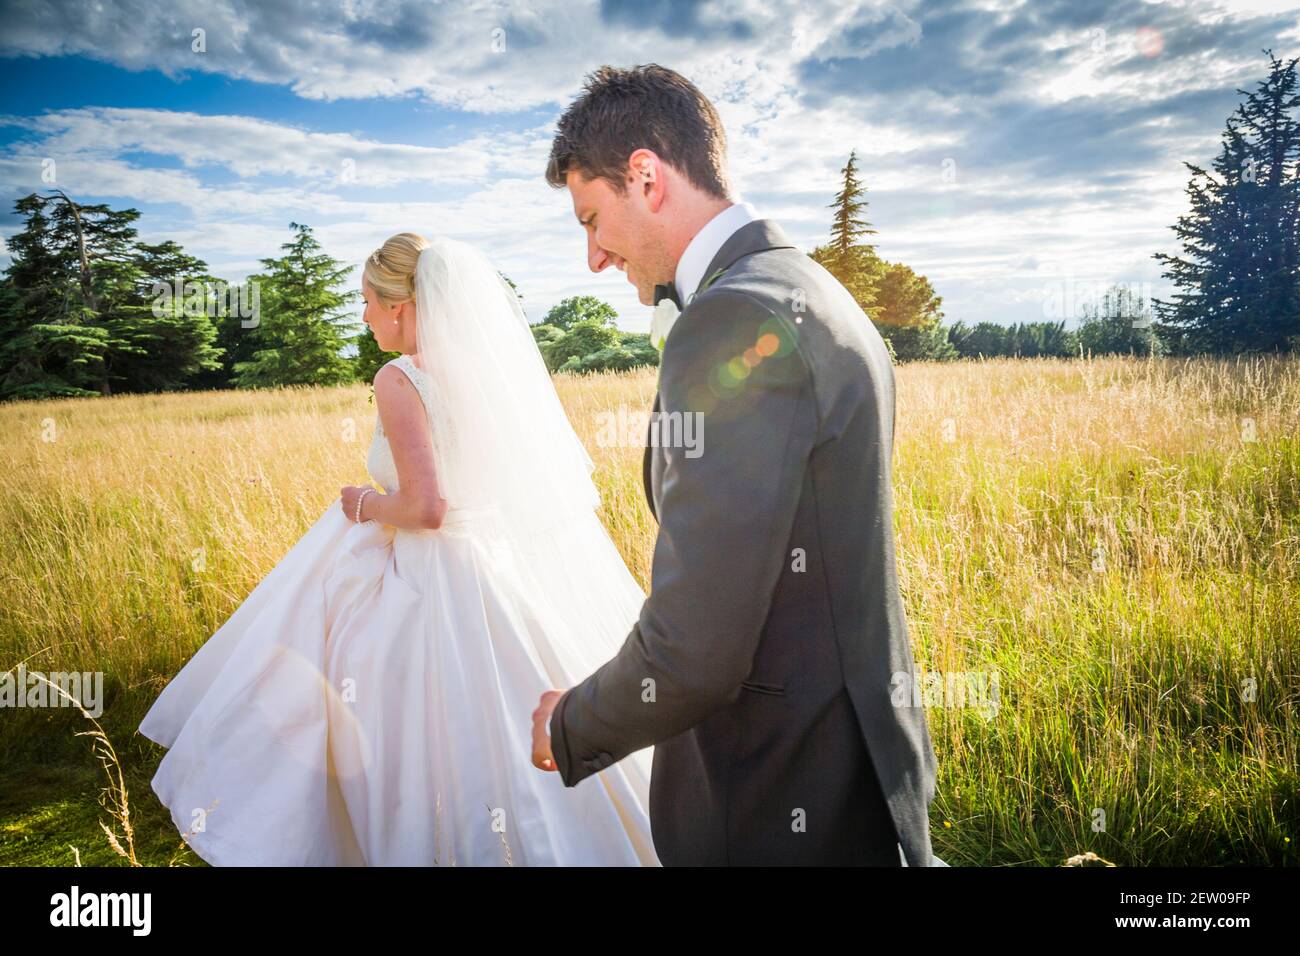 Mariée et mariée de jeunes mariés marchant à travers la longue herbe du domaine de la maison juste après qu'ils se sont mariés.la mariée est conduit la marche. Banque D'Images